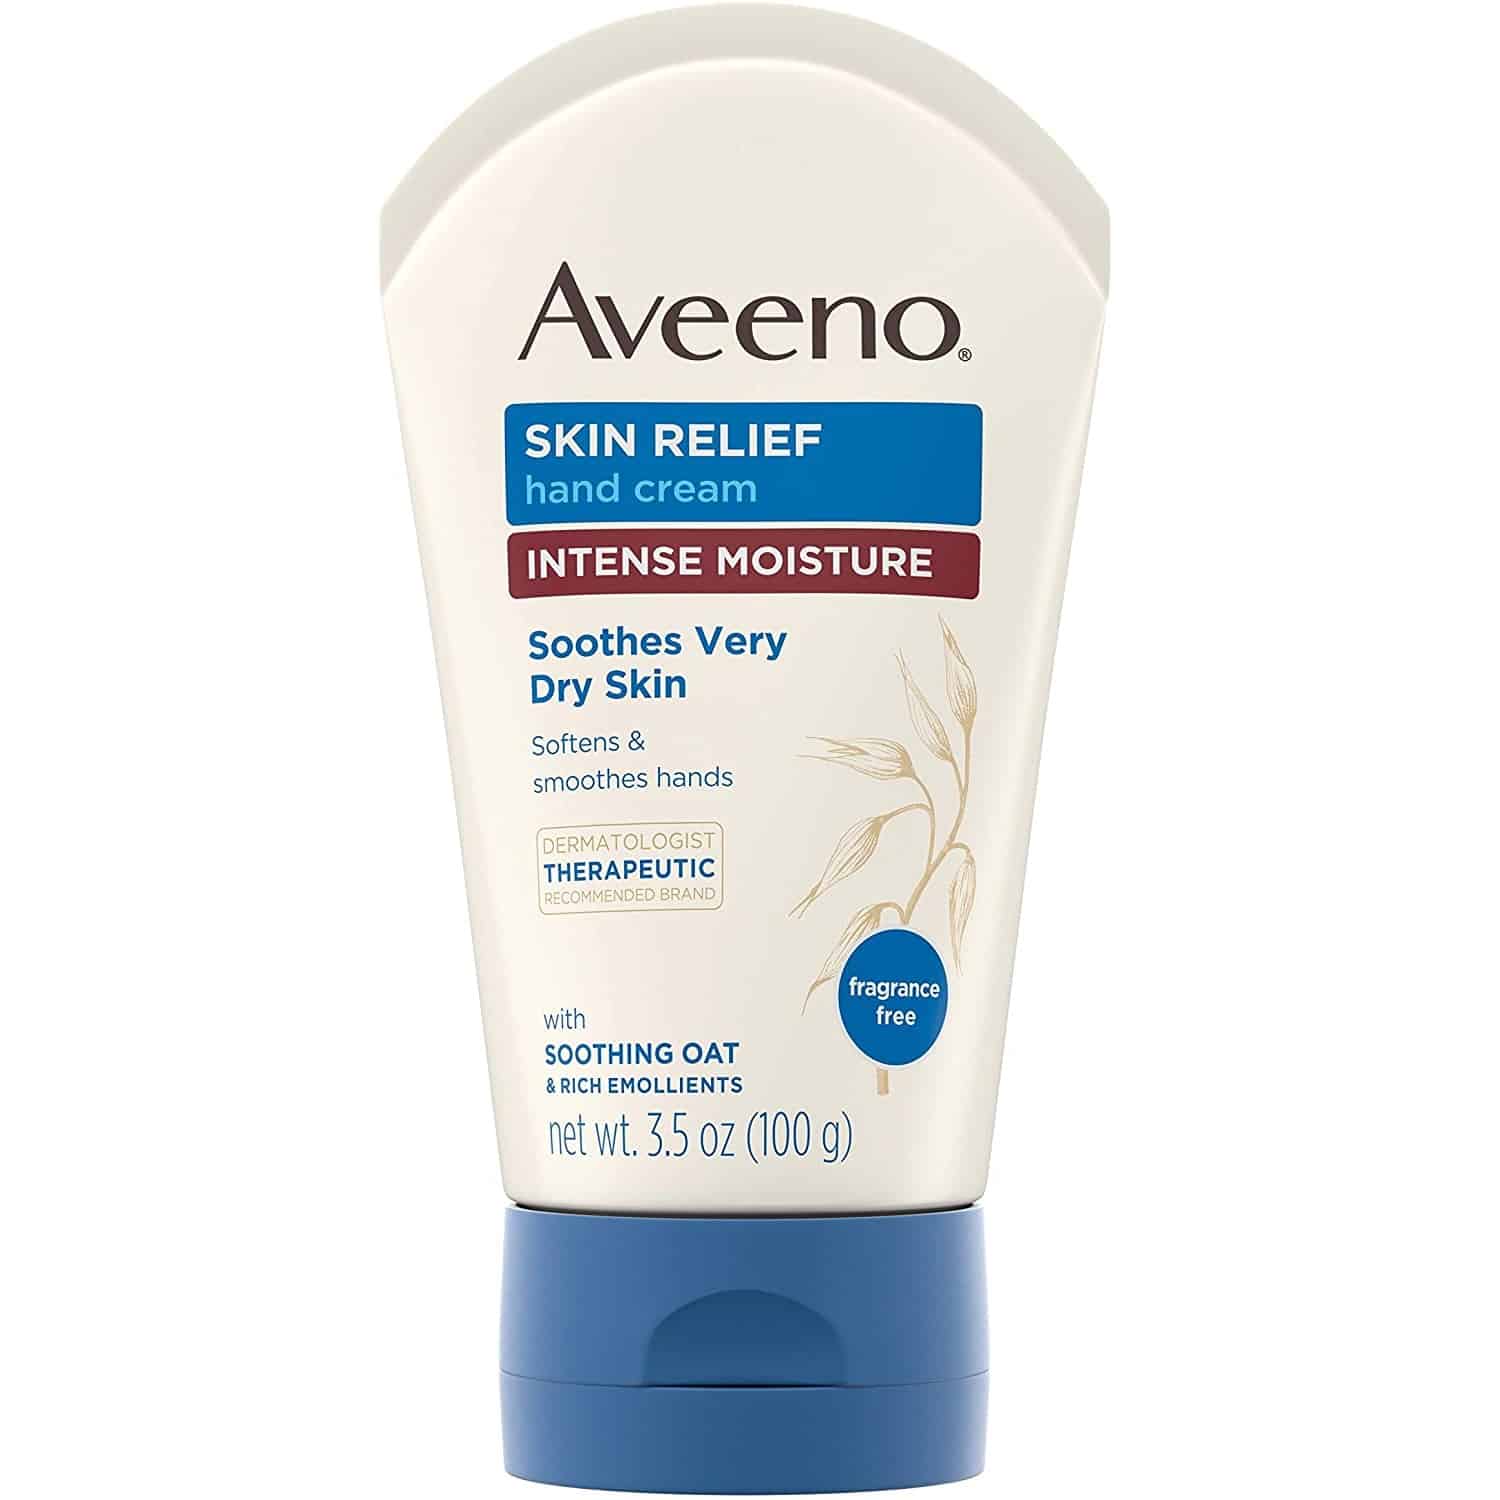 aveeno skin relief hand cream review sanwarna.pk